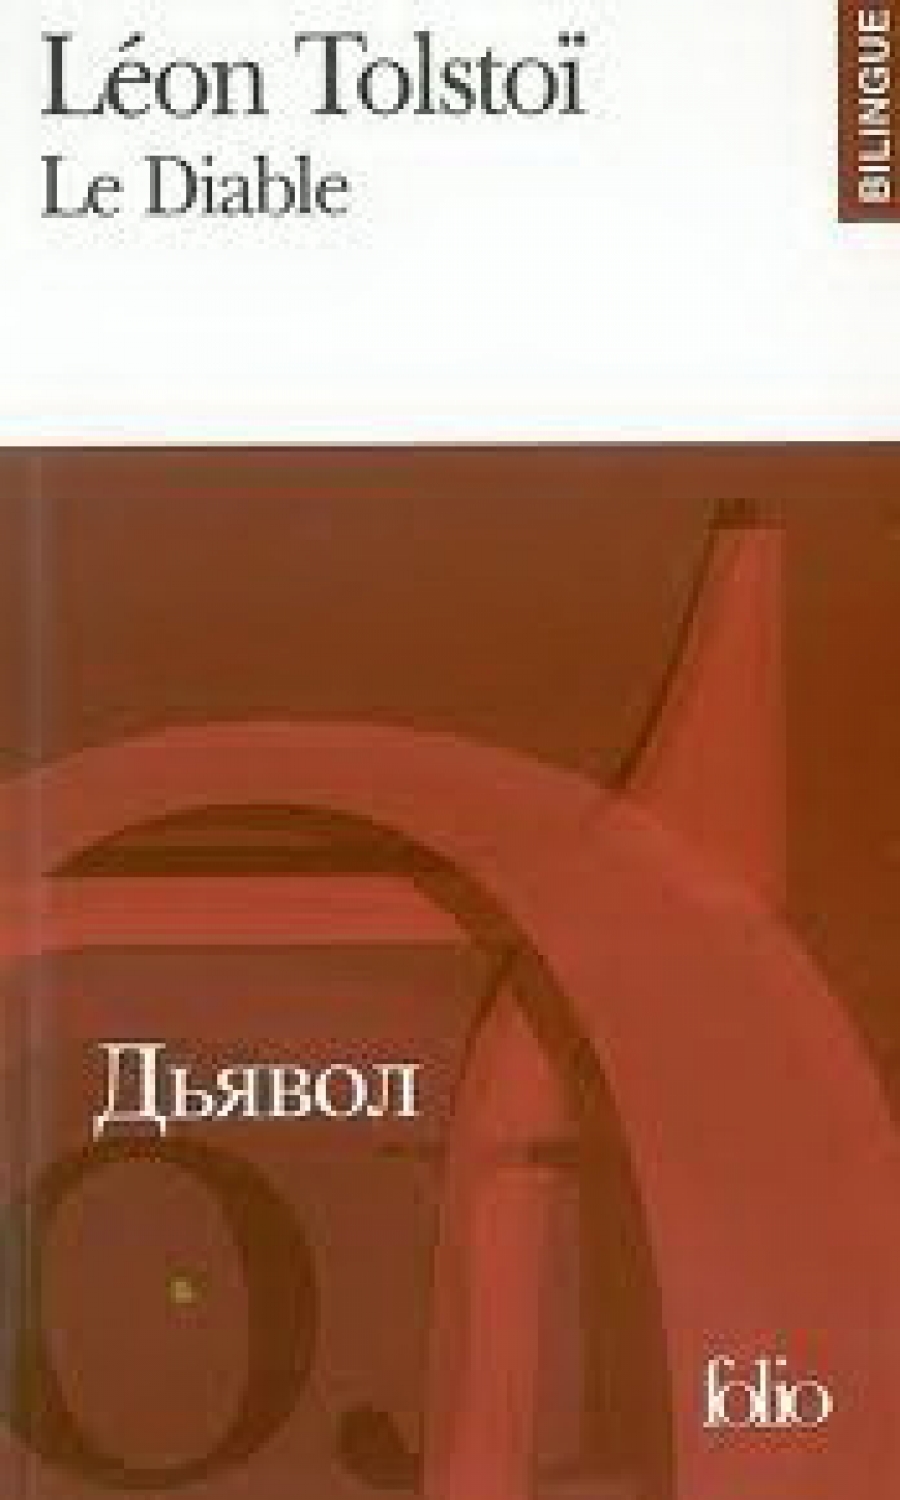 Leon, Tolstoi Diable (Edition bilingue, Francais-Russe) 